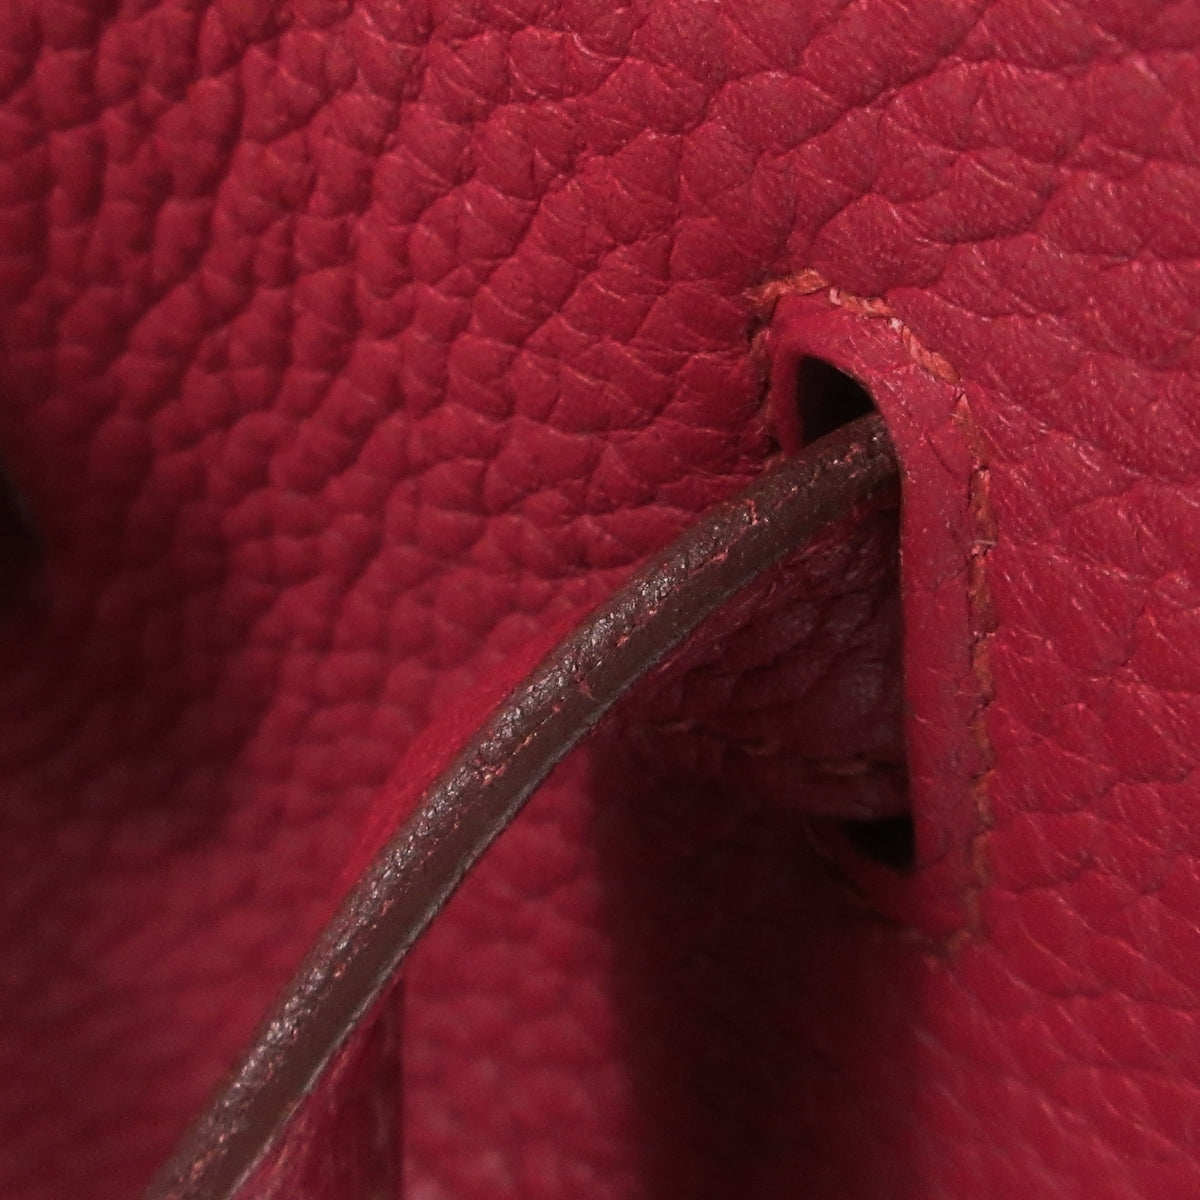 Hermès Birkin 35 Ruby Red